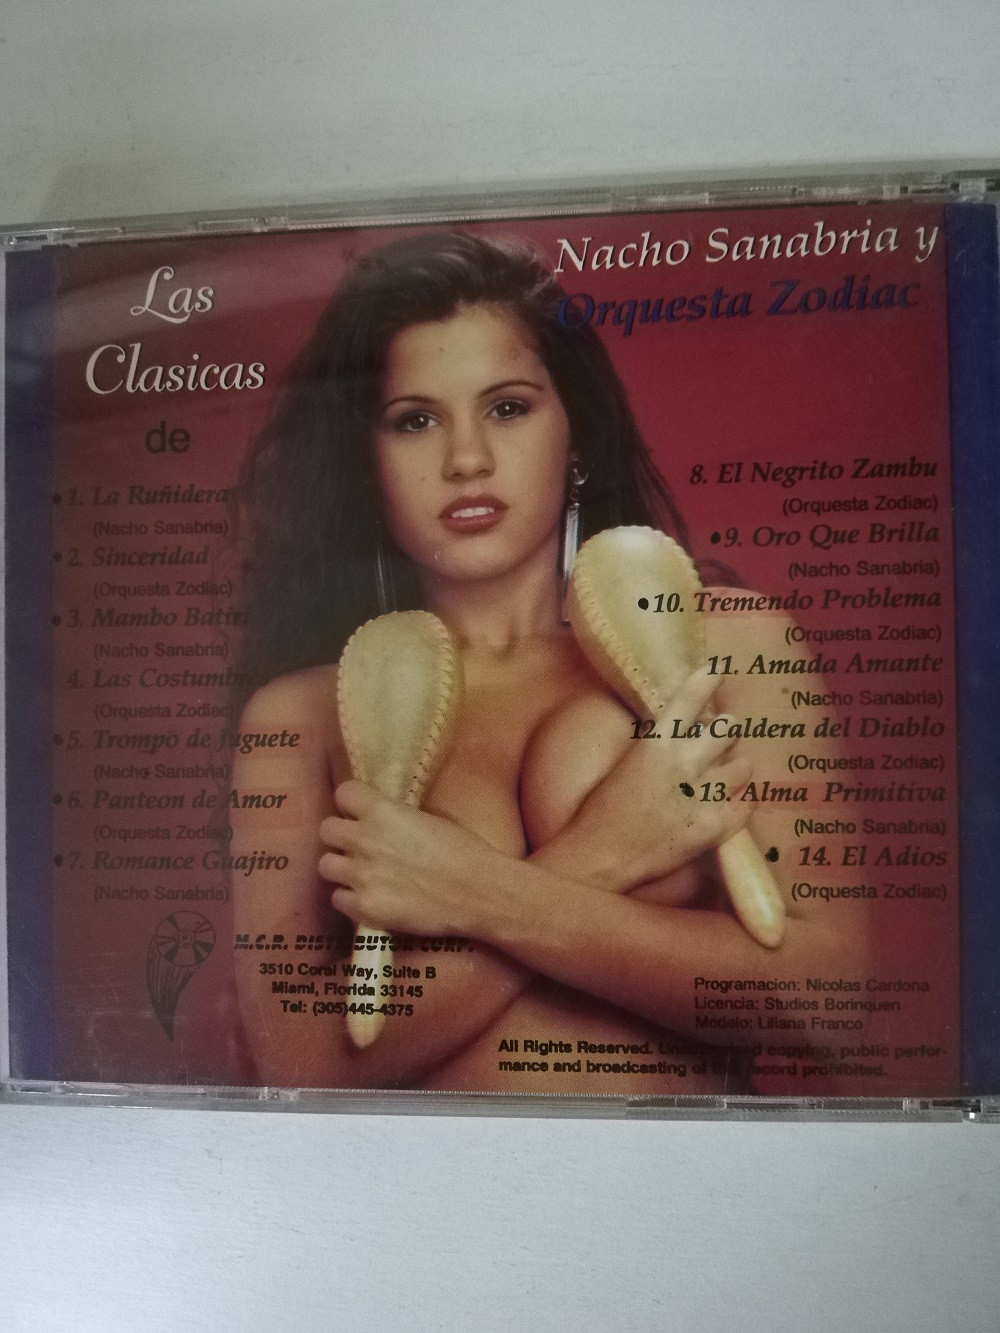 Imagen CD NACHO SANABRIA Y ORQUESTA ZODIAC - LAS CLÁSICAS 2